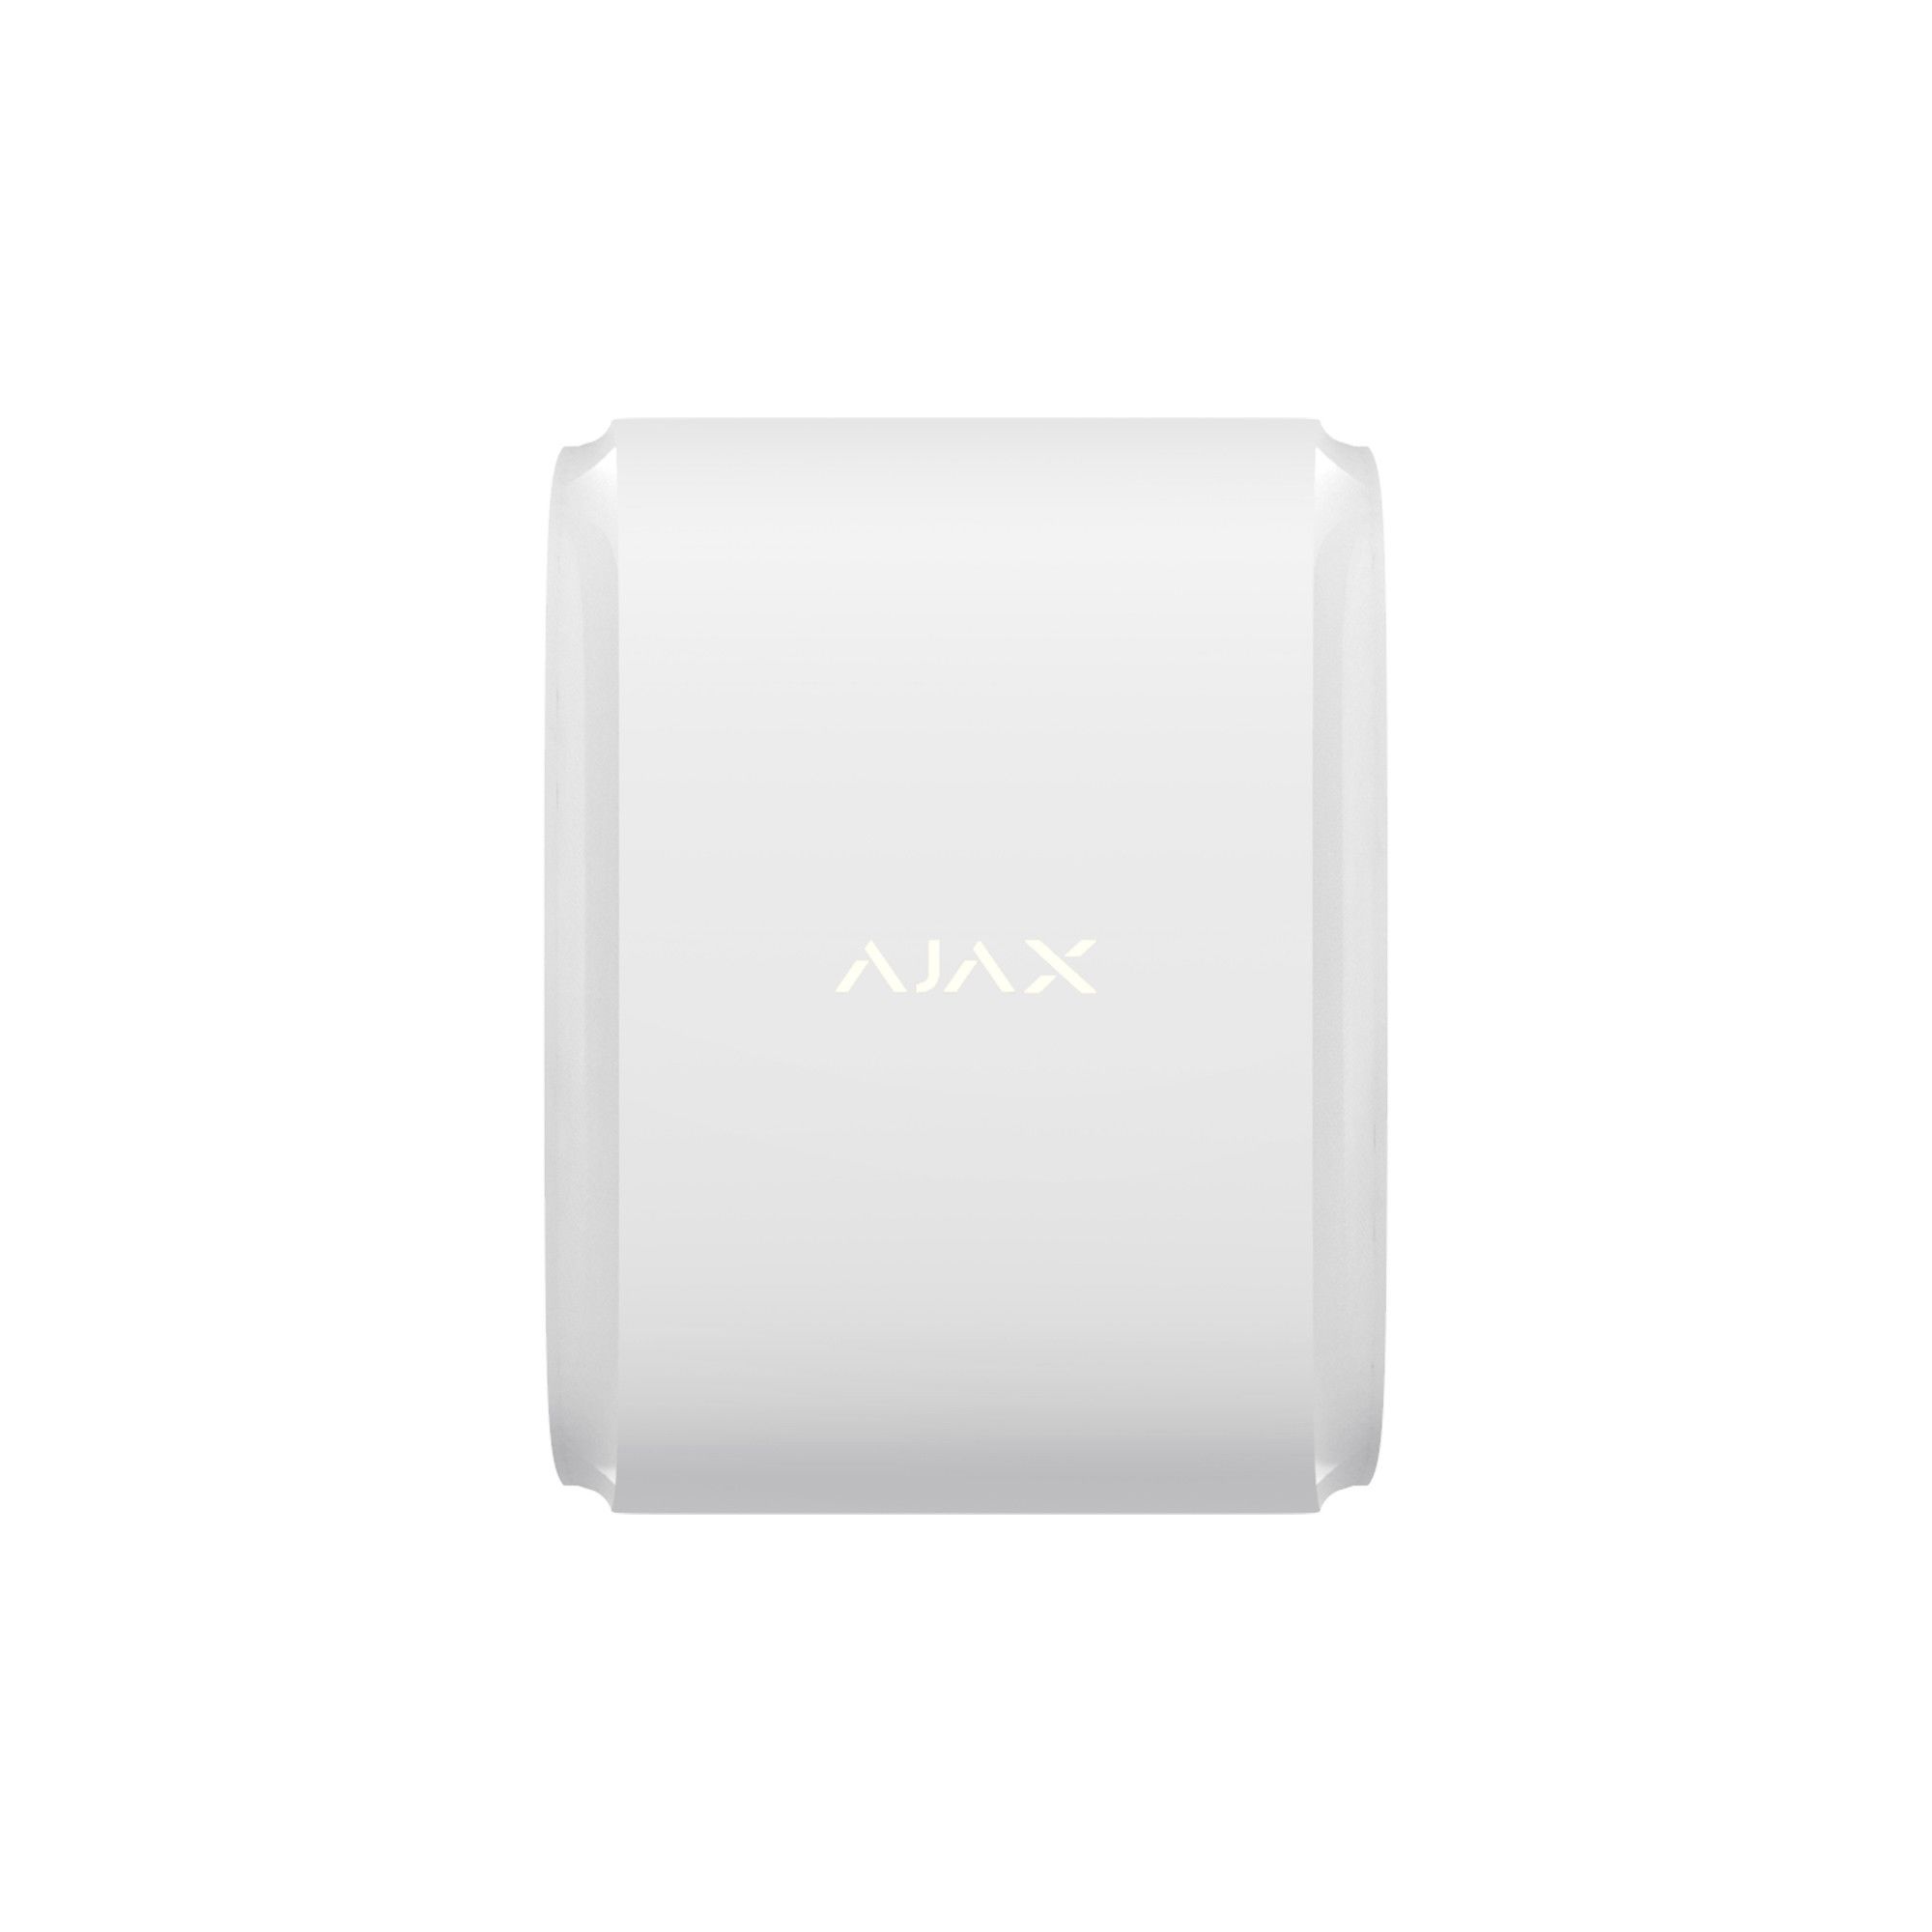 Уличный двухнаправленный датчик движения типа «штора» Ajax DualCurtain Outdoor white